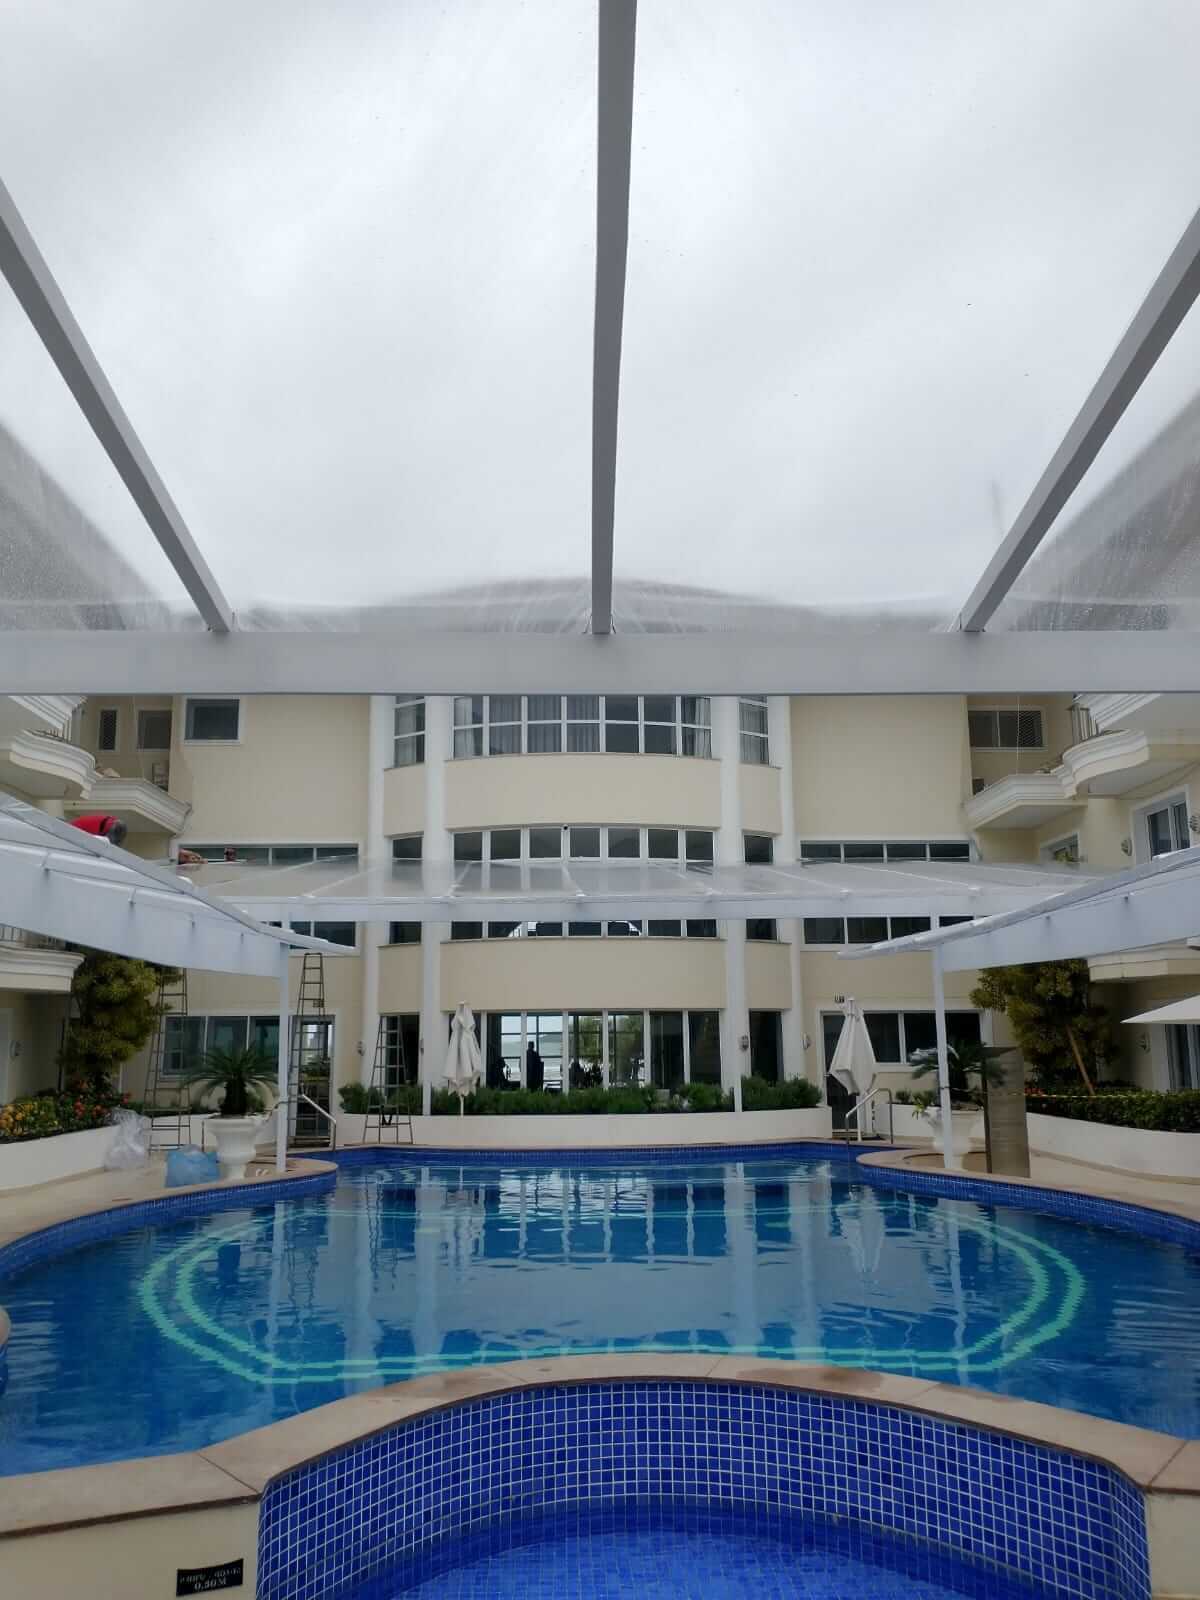 Cobertura área de piscina - Cobertura para piscinas - Cobertura transparente para piscinas em São Paulo e Região Opções Coberturas